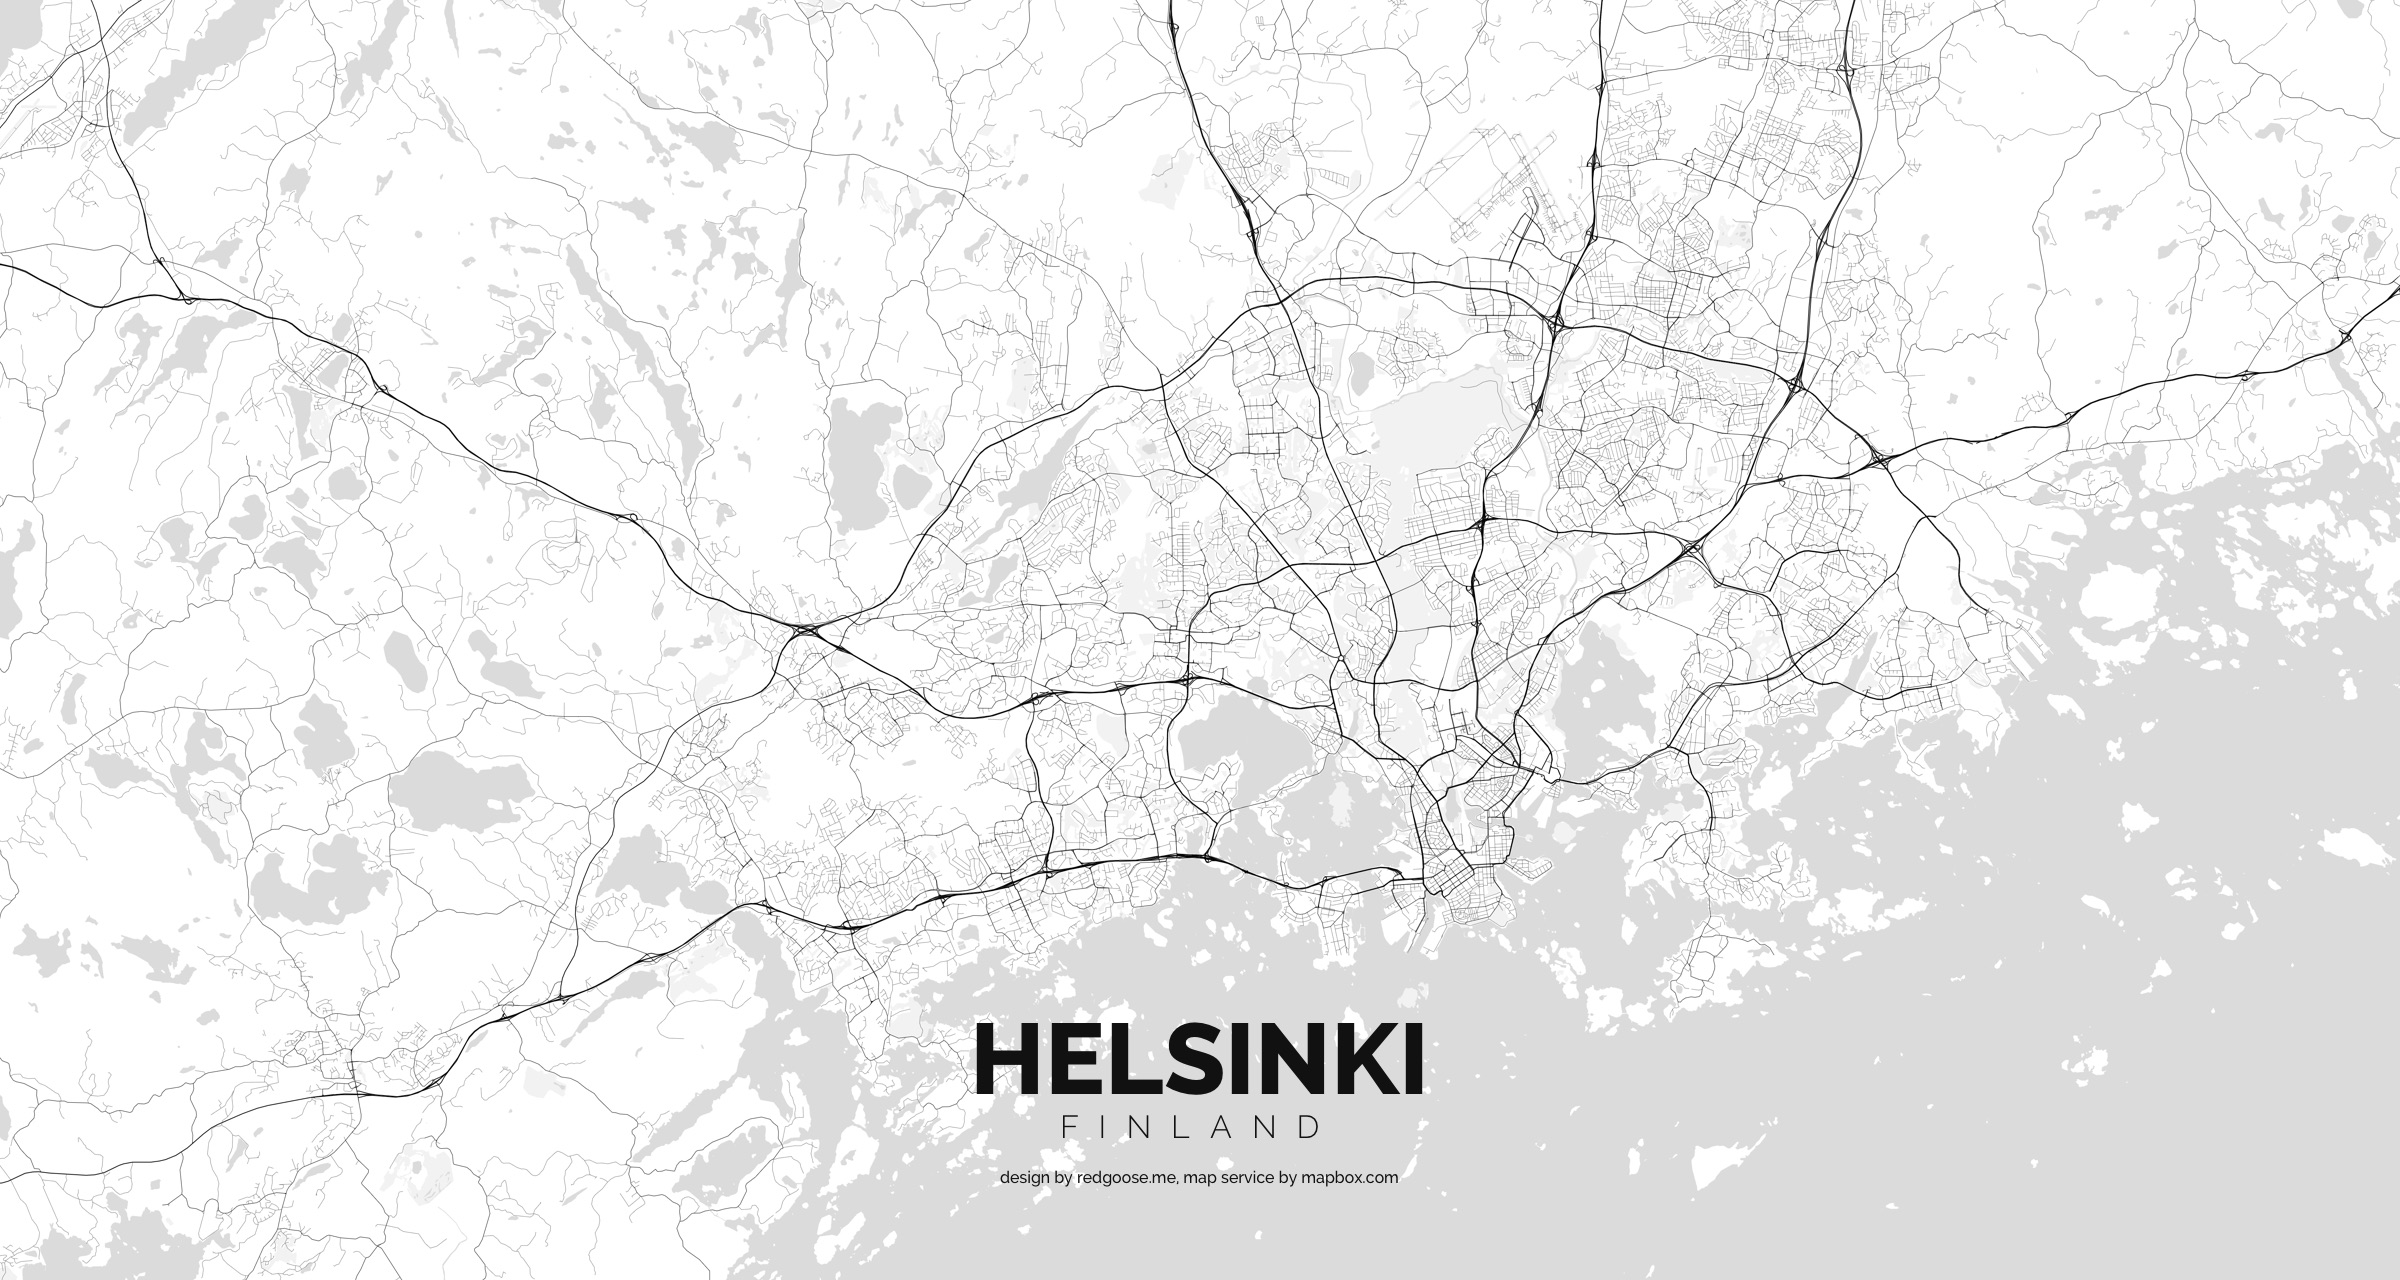 Finland_-_Helsinki.jpg